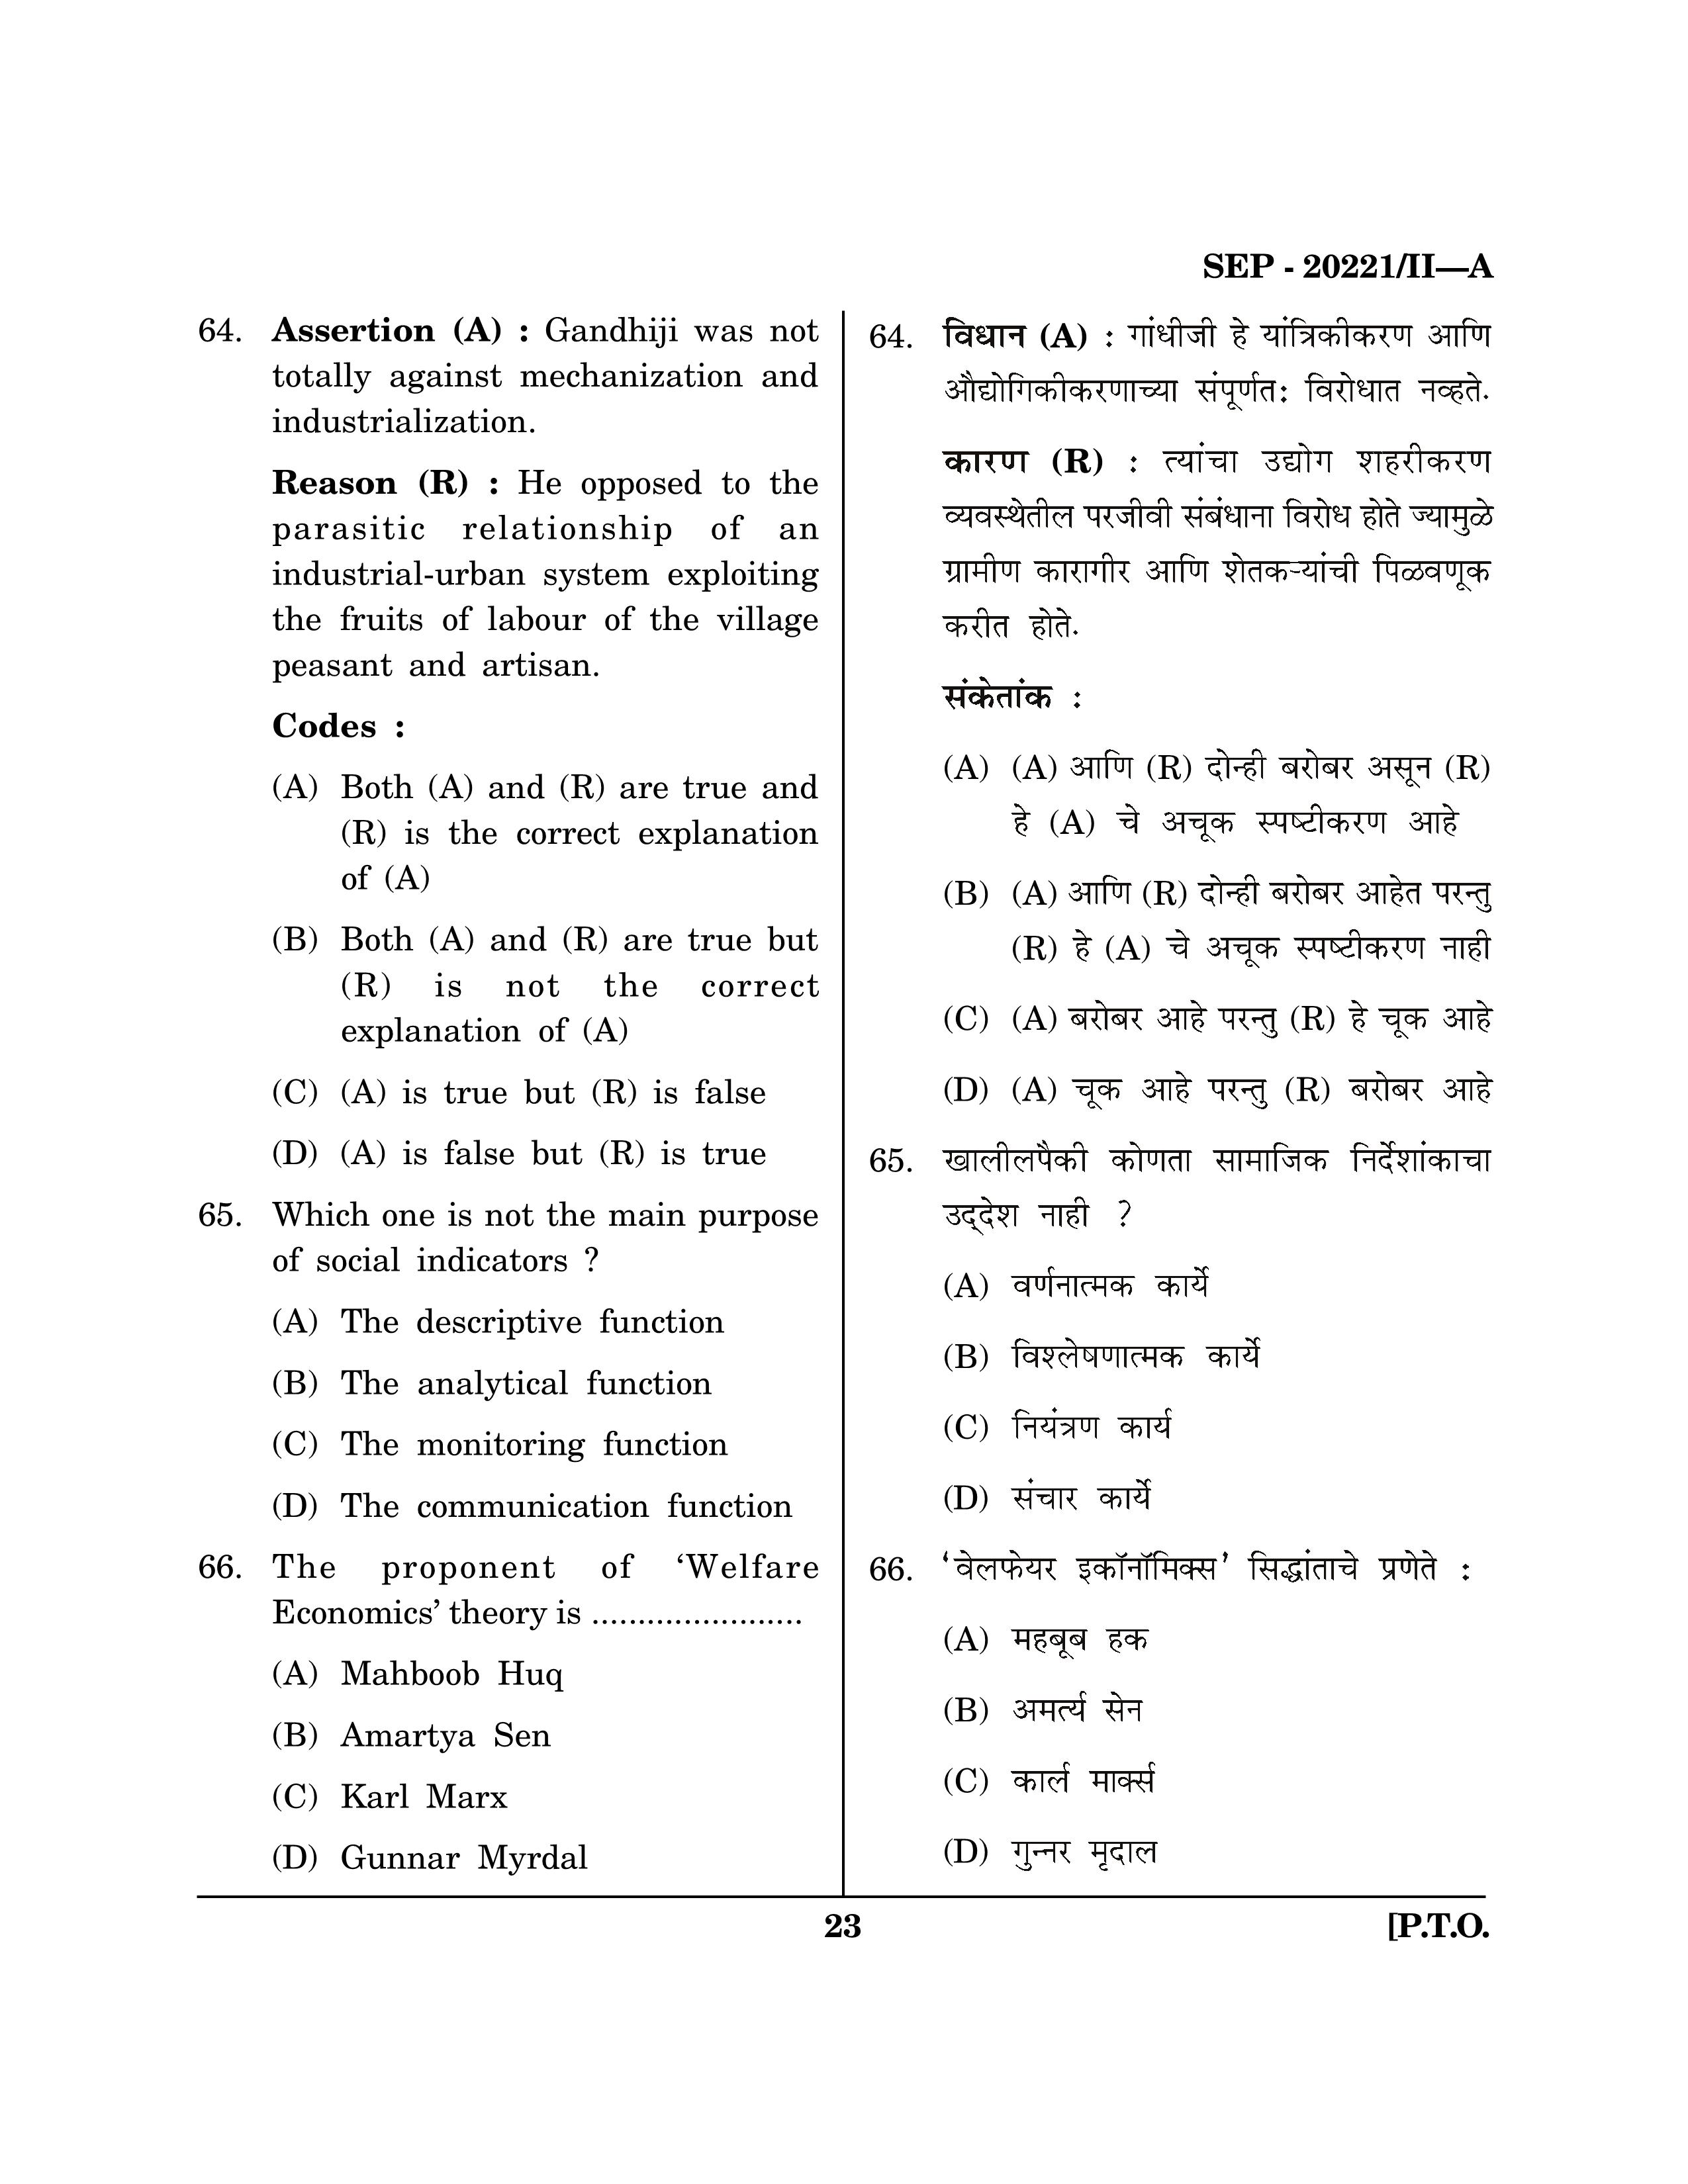 Maharashtra SET Social Work Exam Question Paper September 2021 22